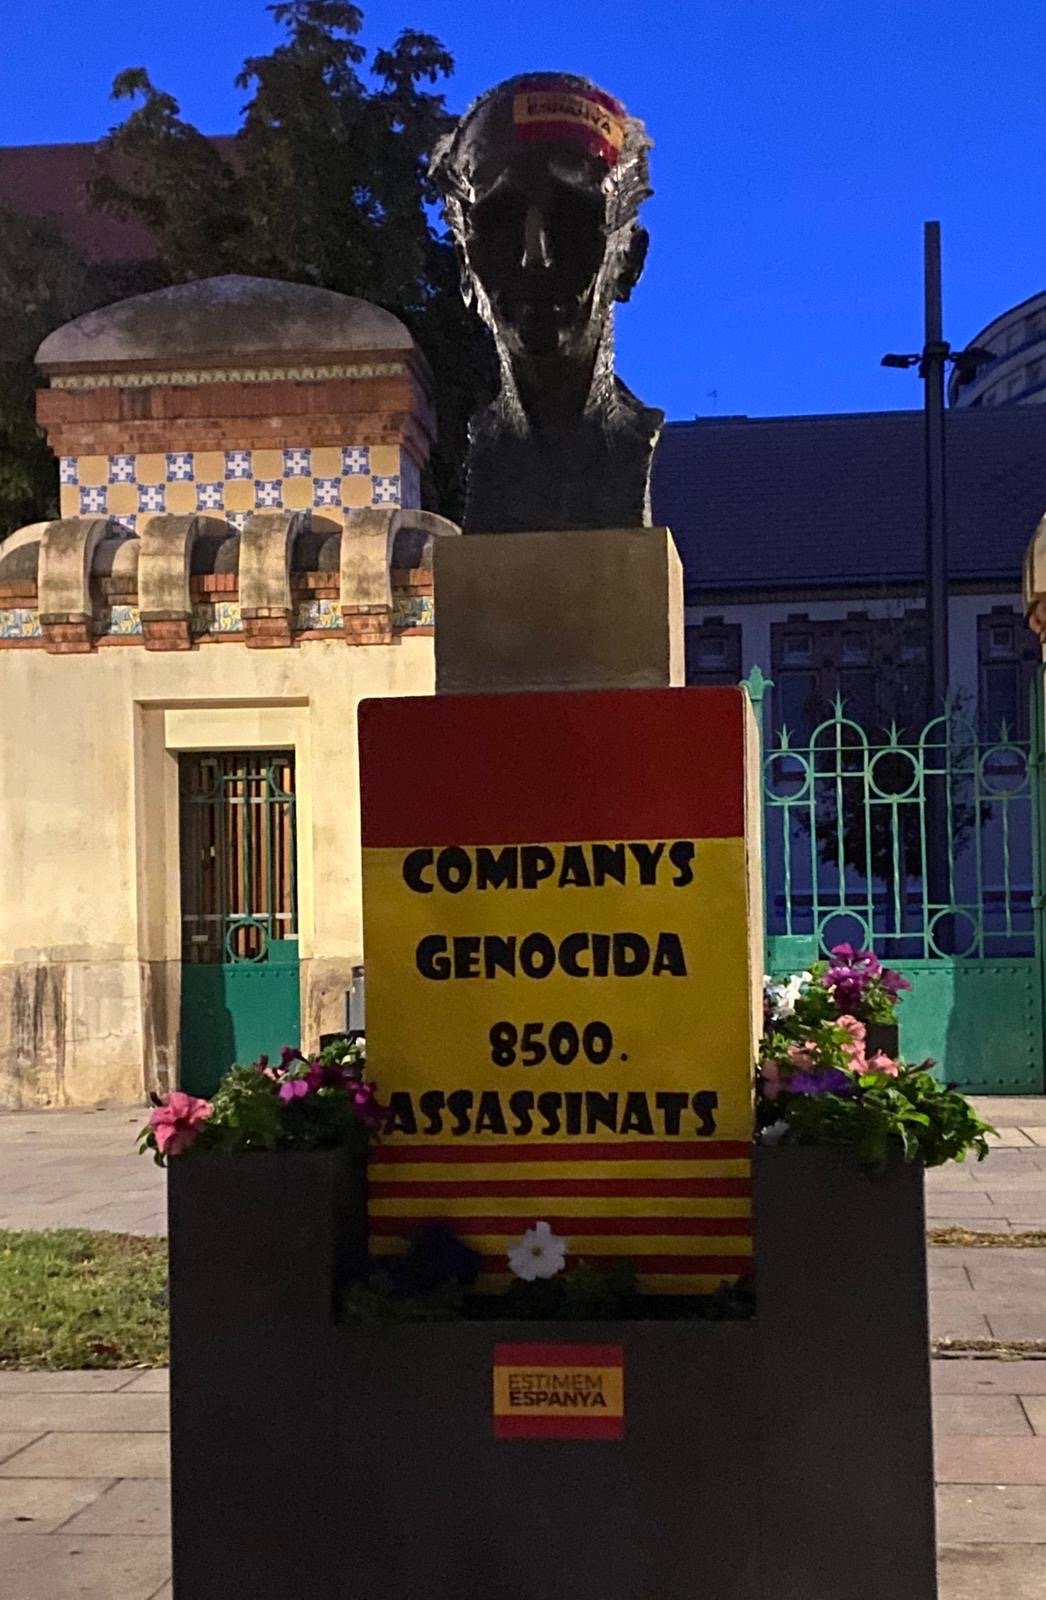 Ataque vandálico al busto de Companys de Lleida en motivo del 12-O